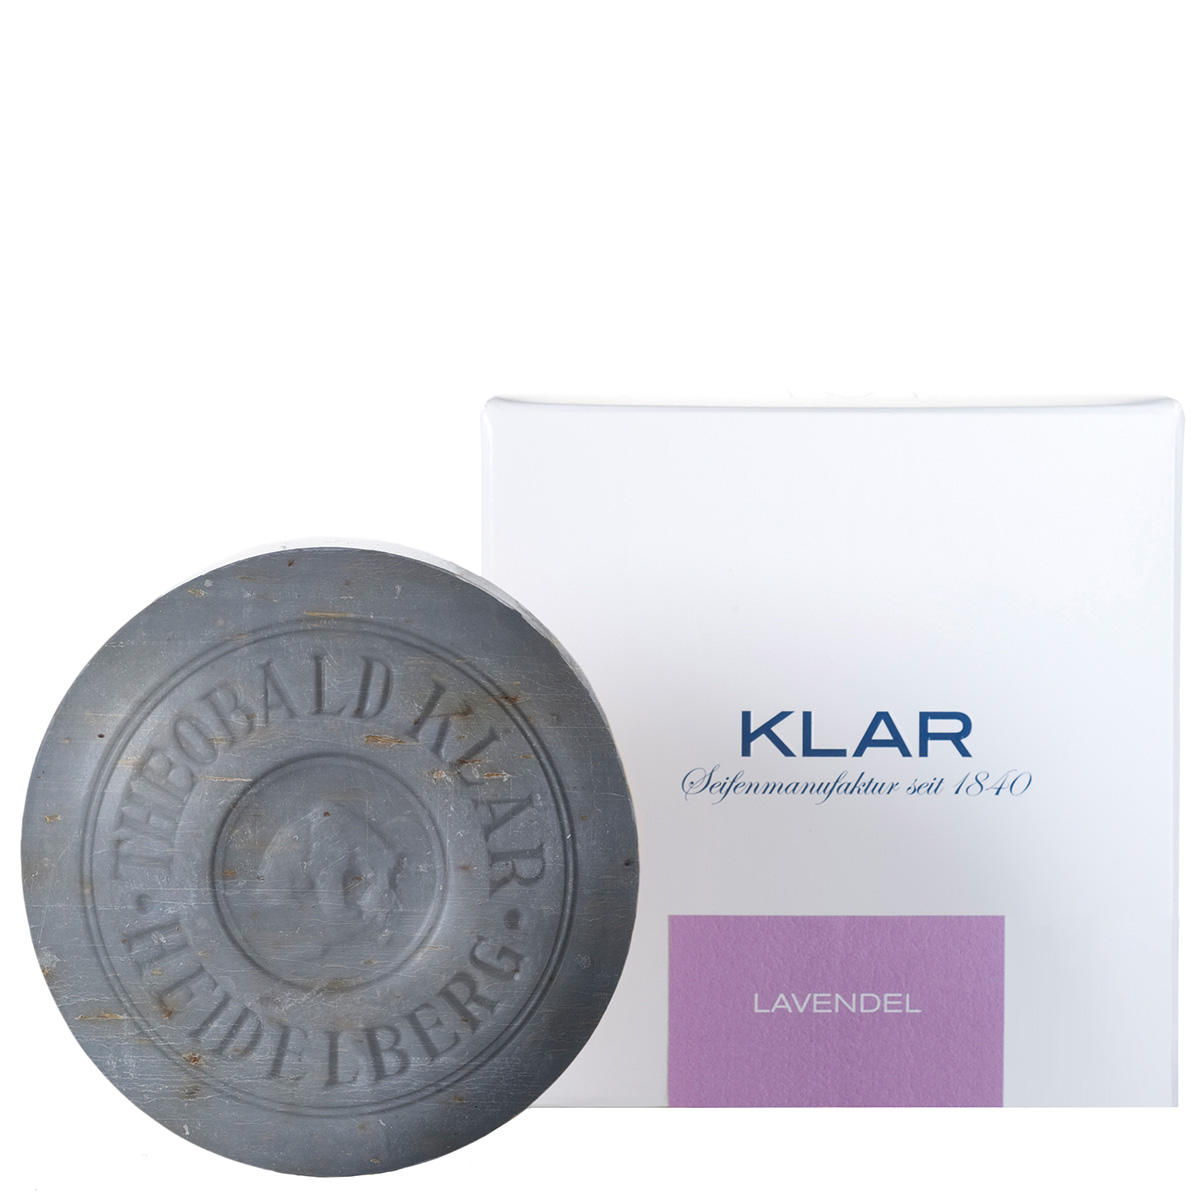 KLAR Lavendelzeep 150 g - 1